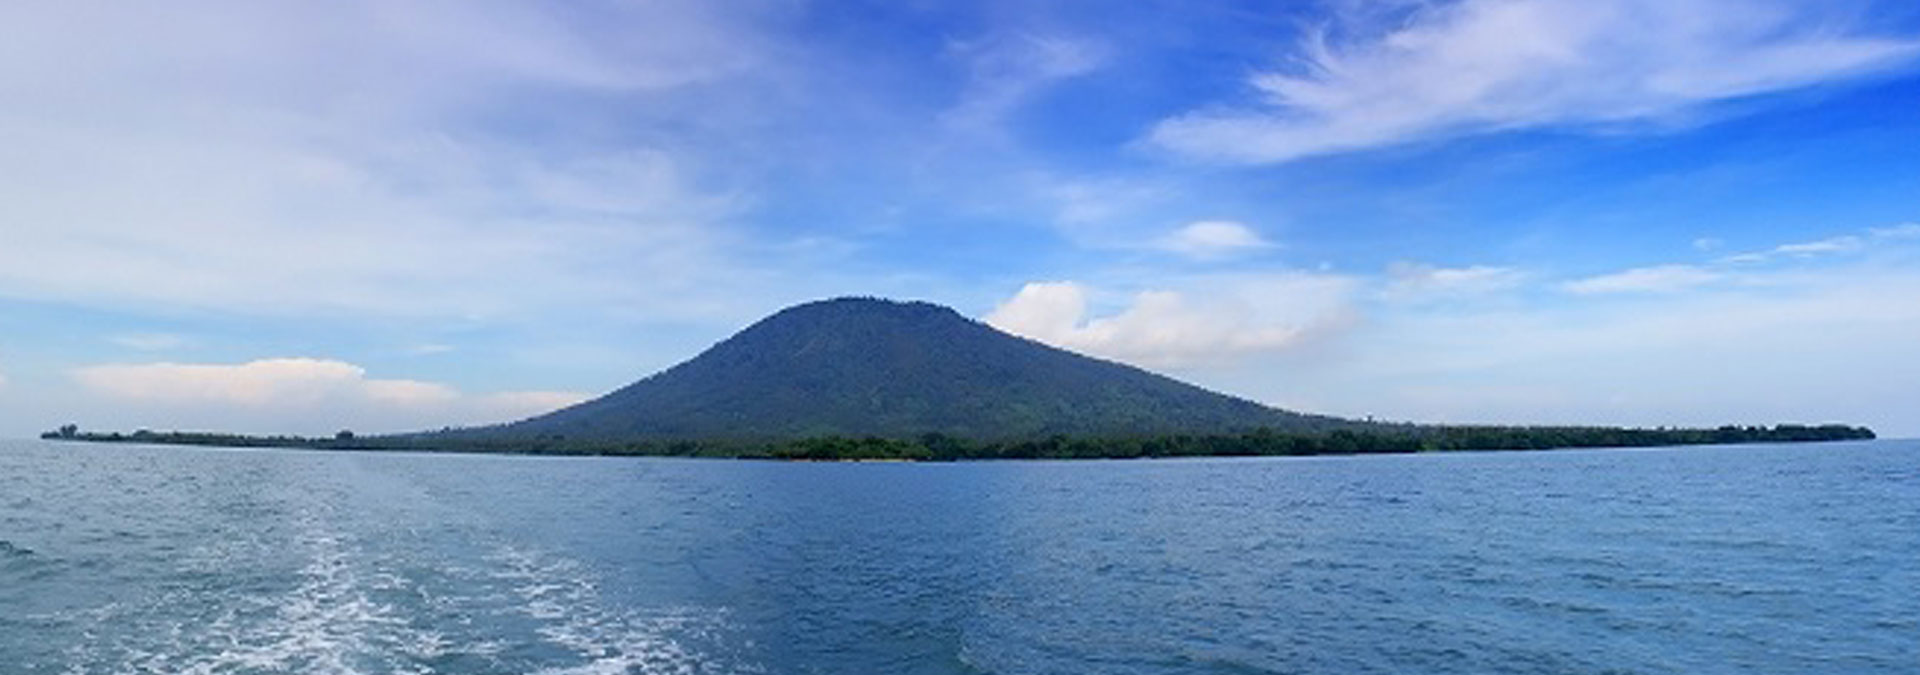 krakatau tour, krakatoa tour, to krakatau